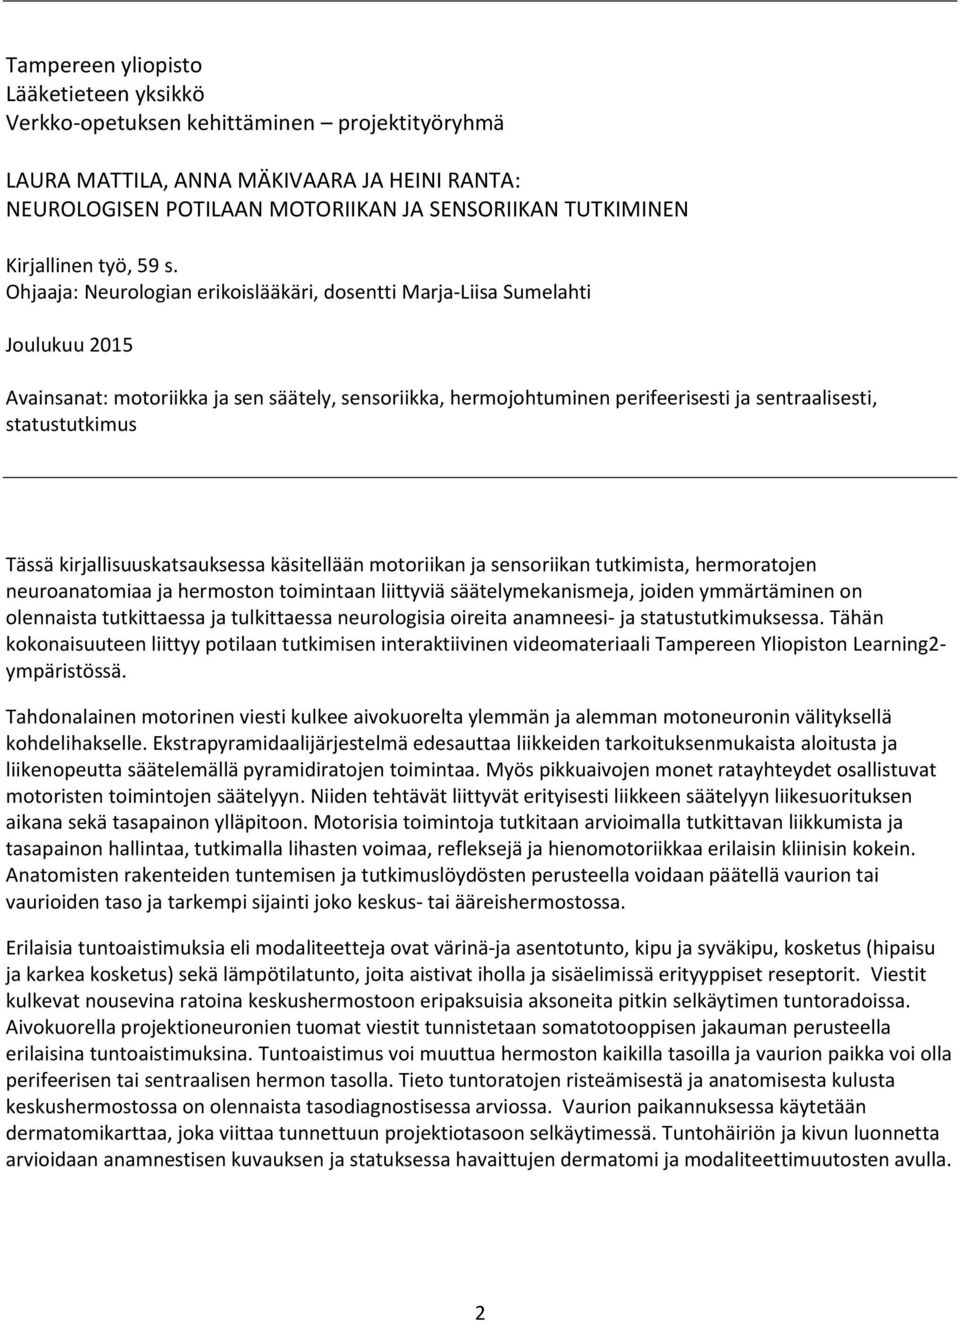 Ohjaaja: Neurologian erikoislääkäri, dosentti Marja-Liisa Sumelahti Joulukuu 2015 Avainsanat: motoriikka ja sen säätely, sensoriikka, hermojohtuminen perifeerisesti ja sentraalisesti, statustutkimus